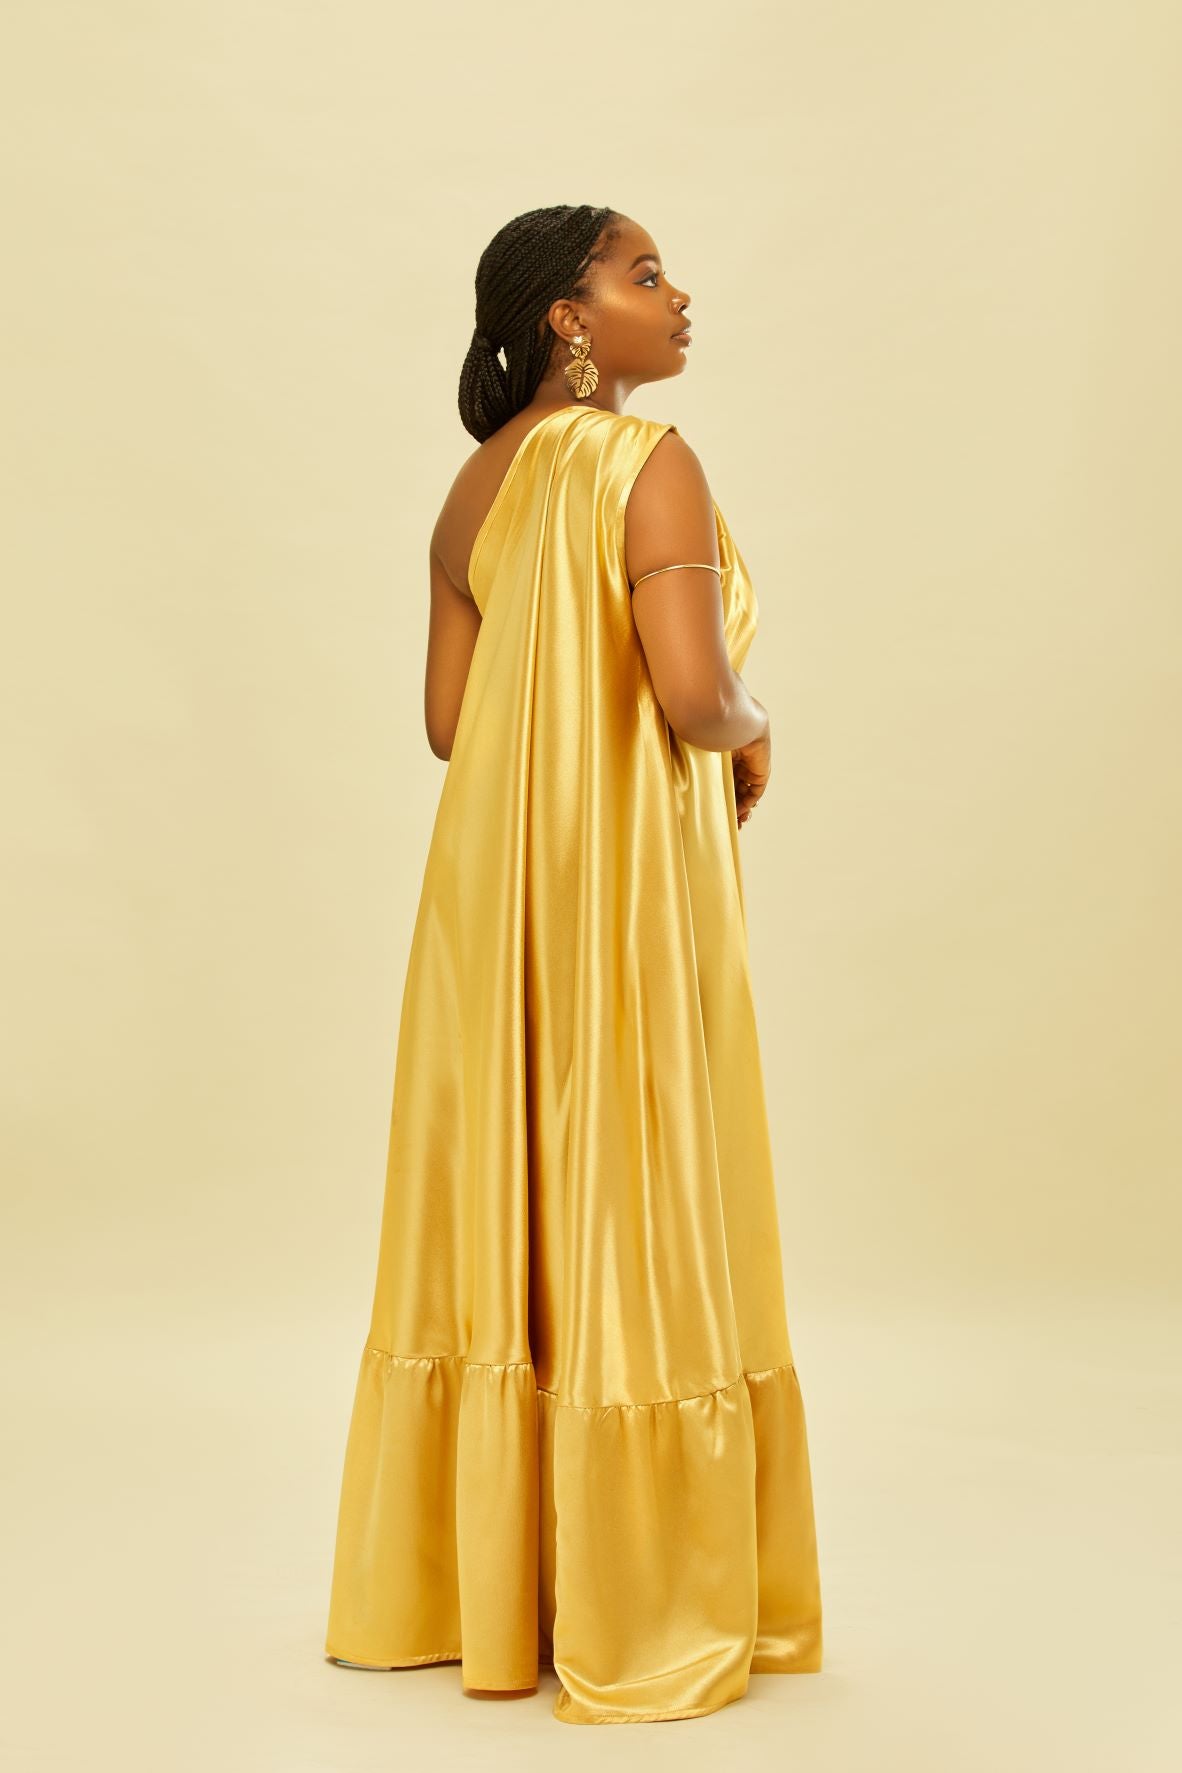 Stunning Golden Grecian One Shoulder Dress